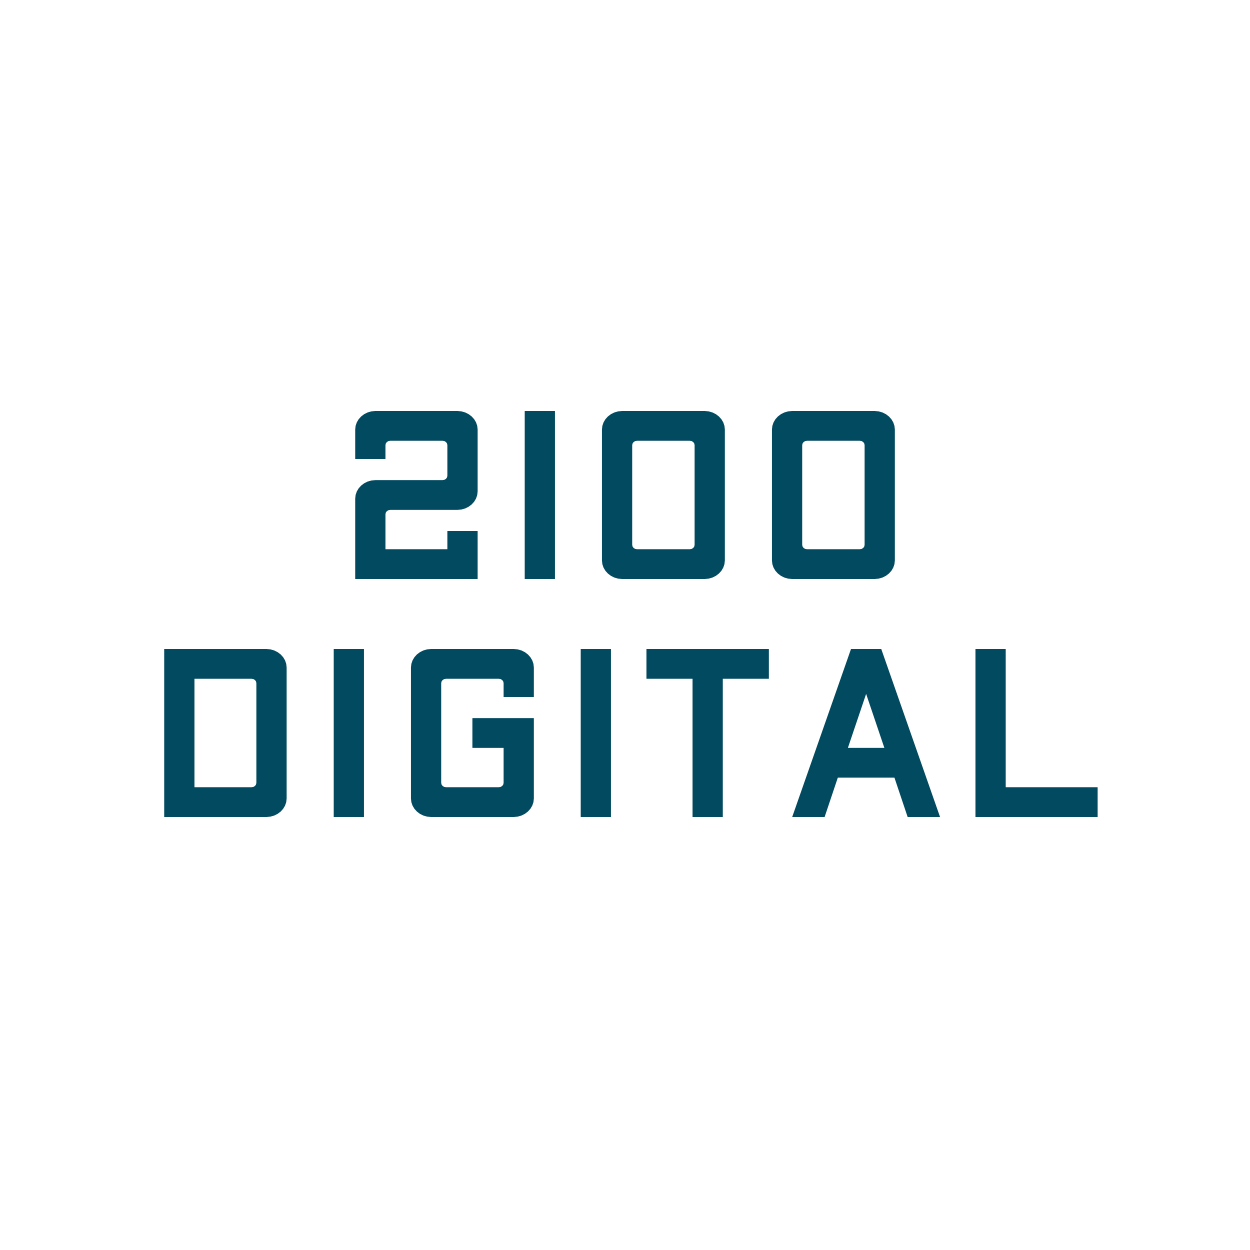 2100 Digital